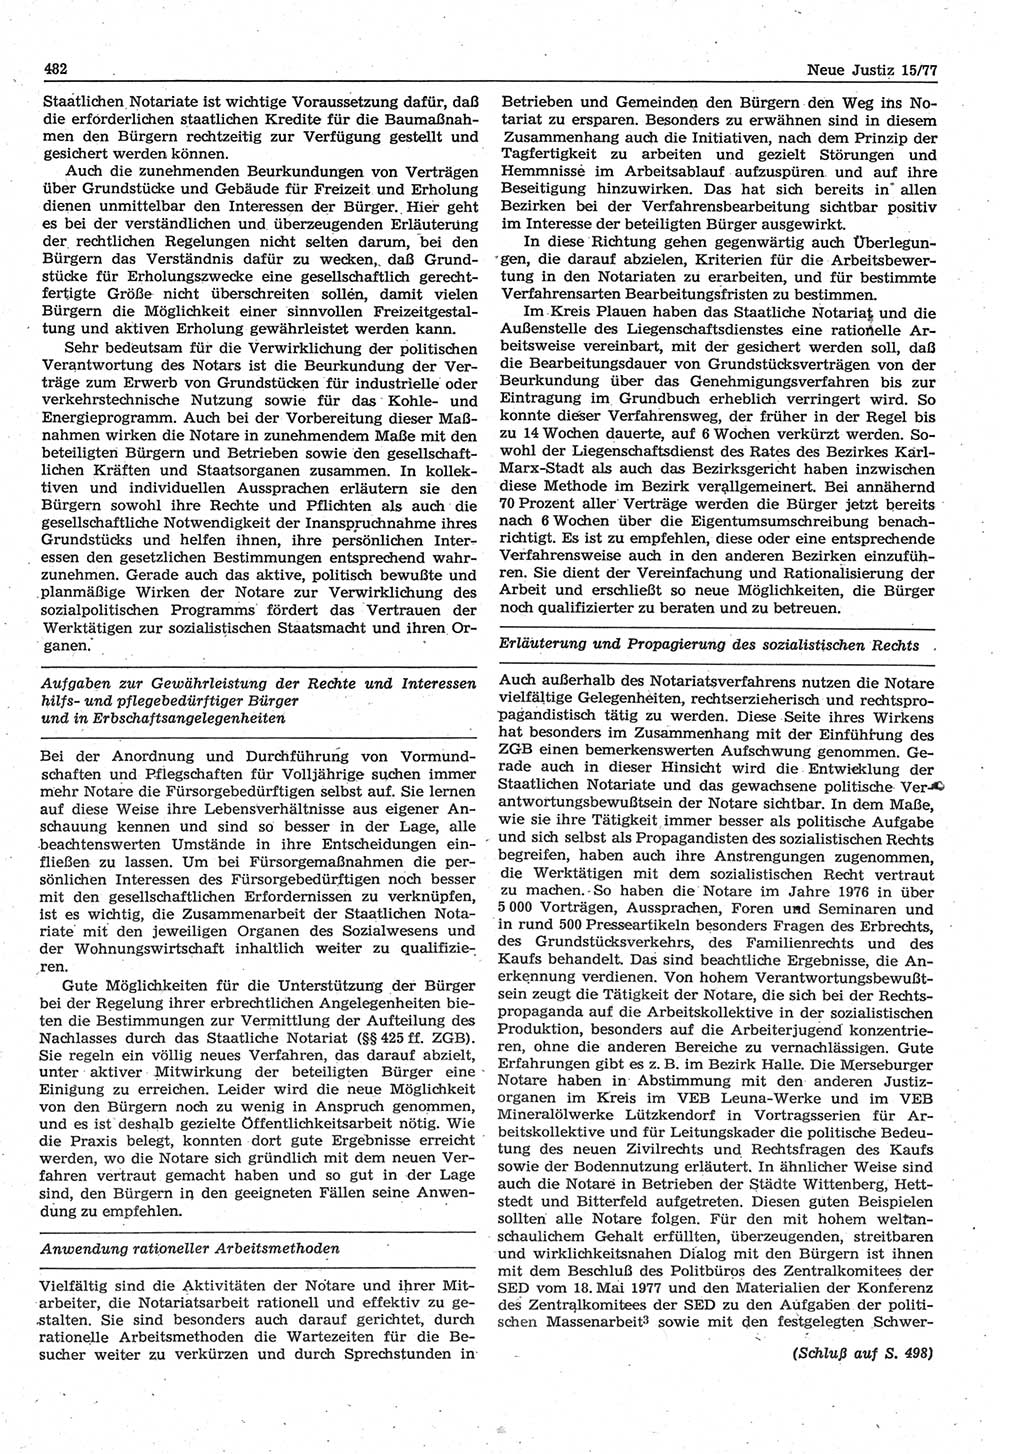 Neue Justiz (NJ), Zeitschrift für Recht und Rechtswissenschaft-Zeitschrift, sozialistisches Recht und Gesetzlichkeit, 31. Jahrgang 1977, Seite 482 (NJ DDR 1977, S. 482)